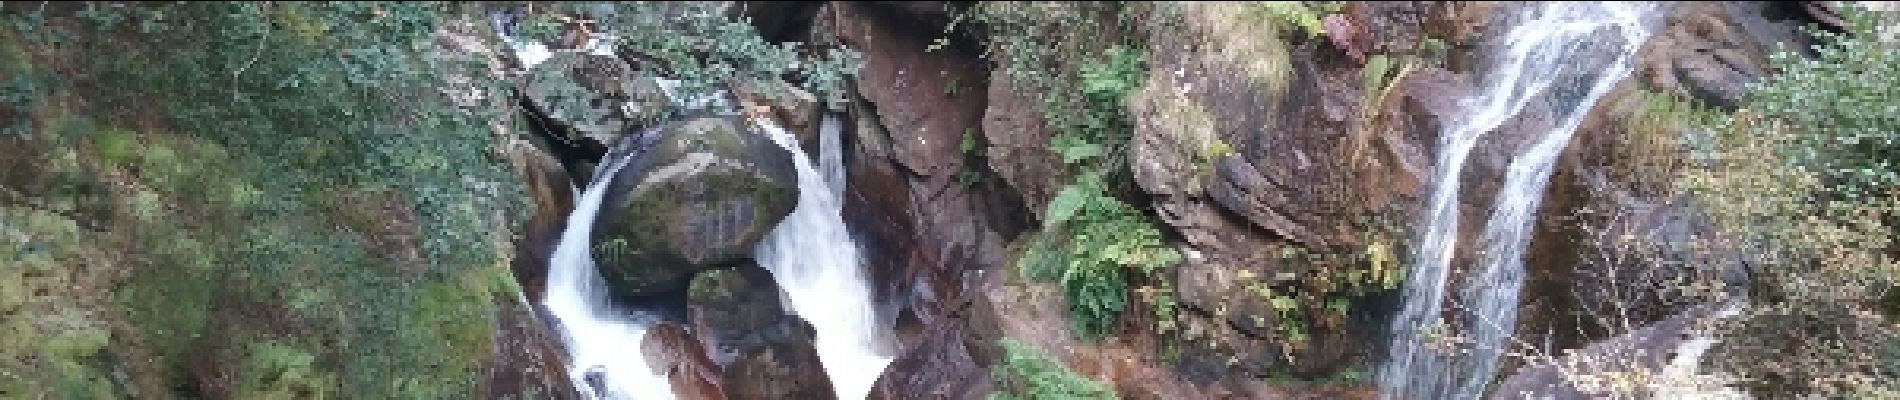 Excursión Senderismo Mondoñedo - cascades de la Tronceda - Photo